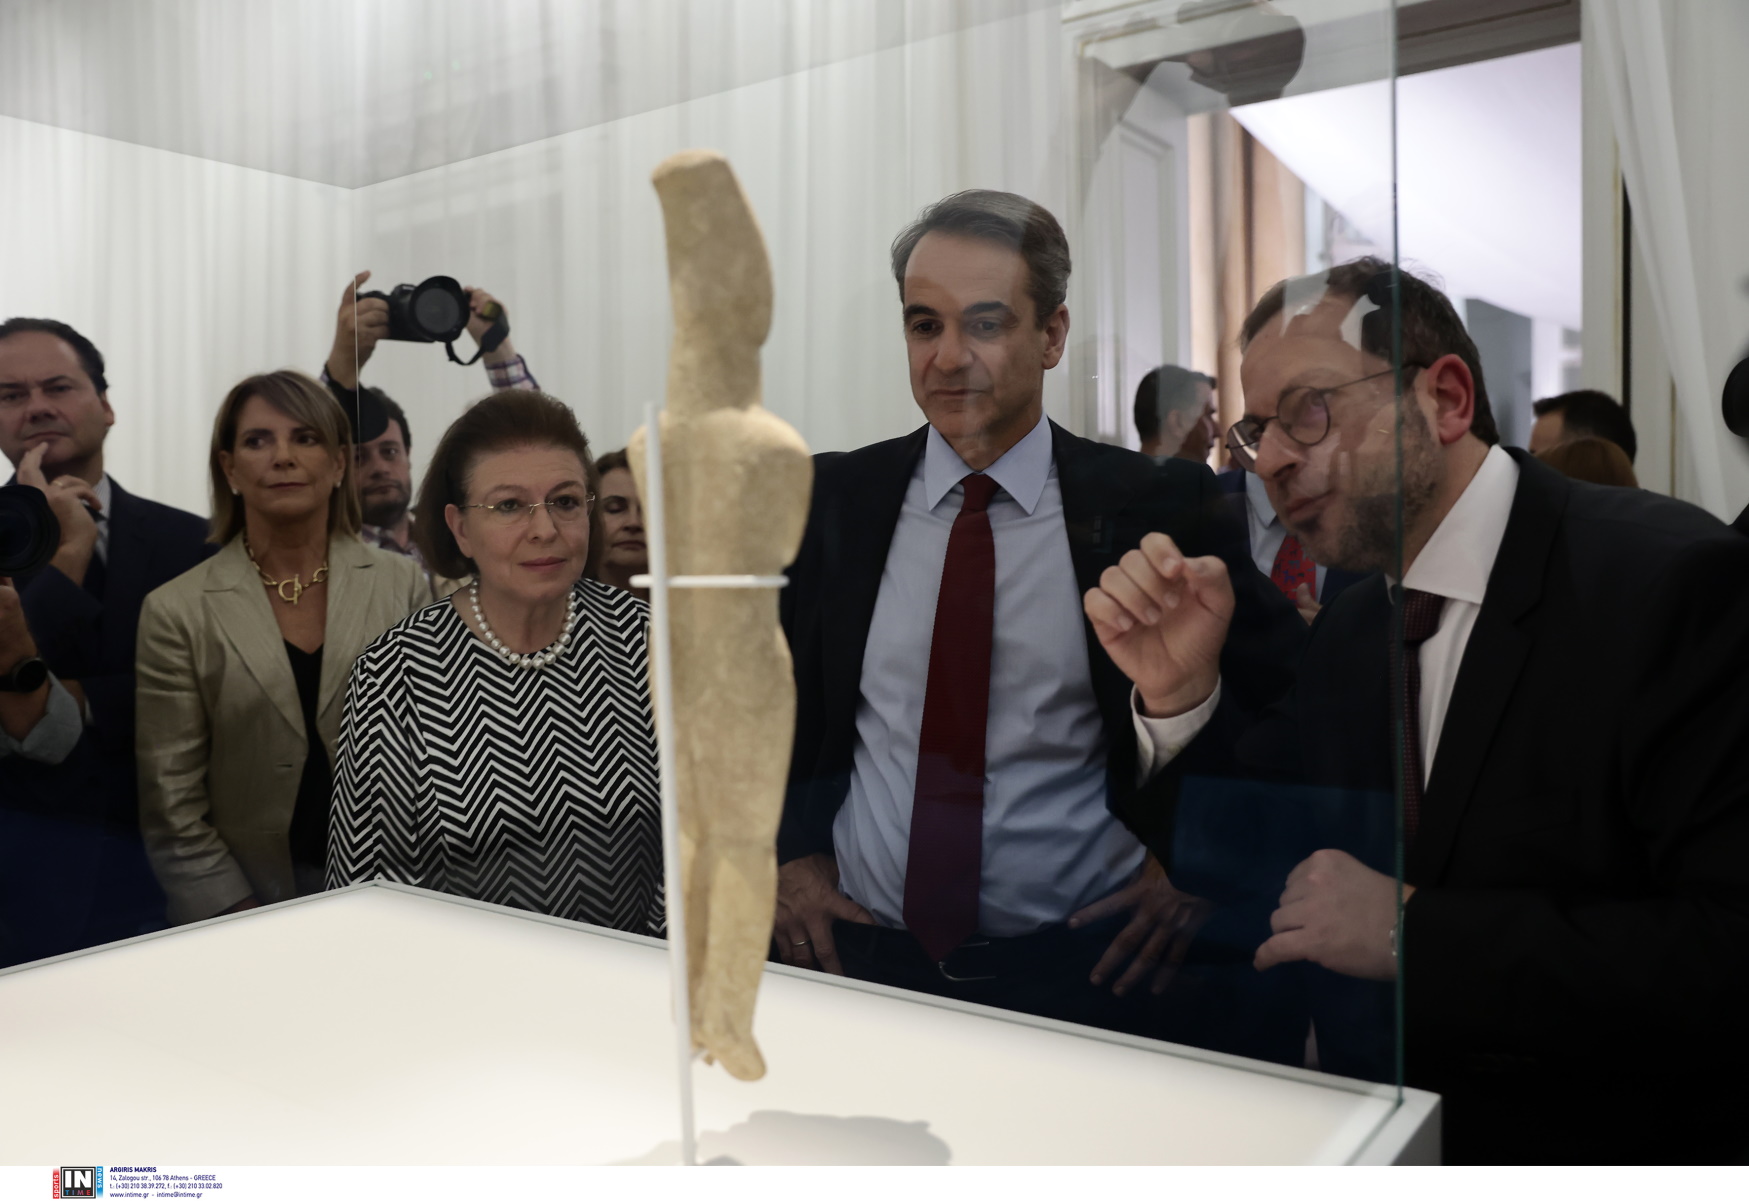 Στην Ελλάδα επιστρέφουν και οι 161 κυκλαδικές αρχαιότητες της συλλογής Stern